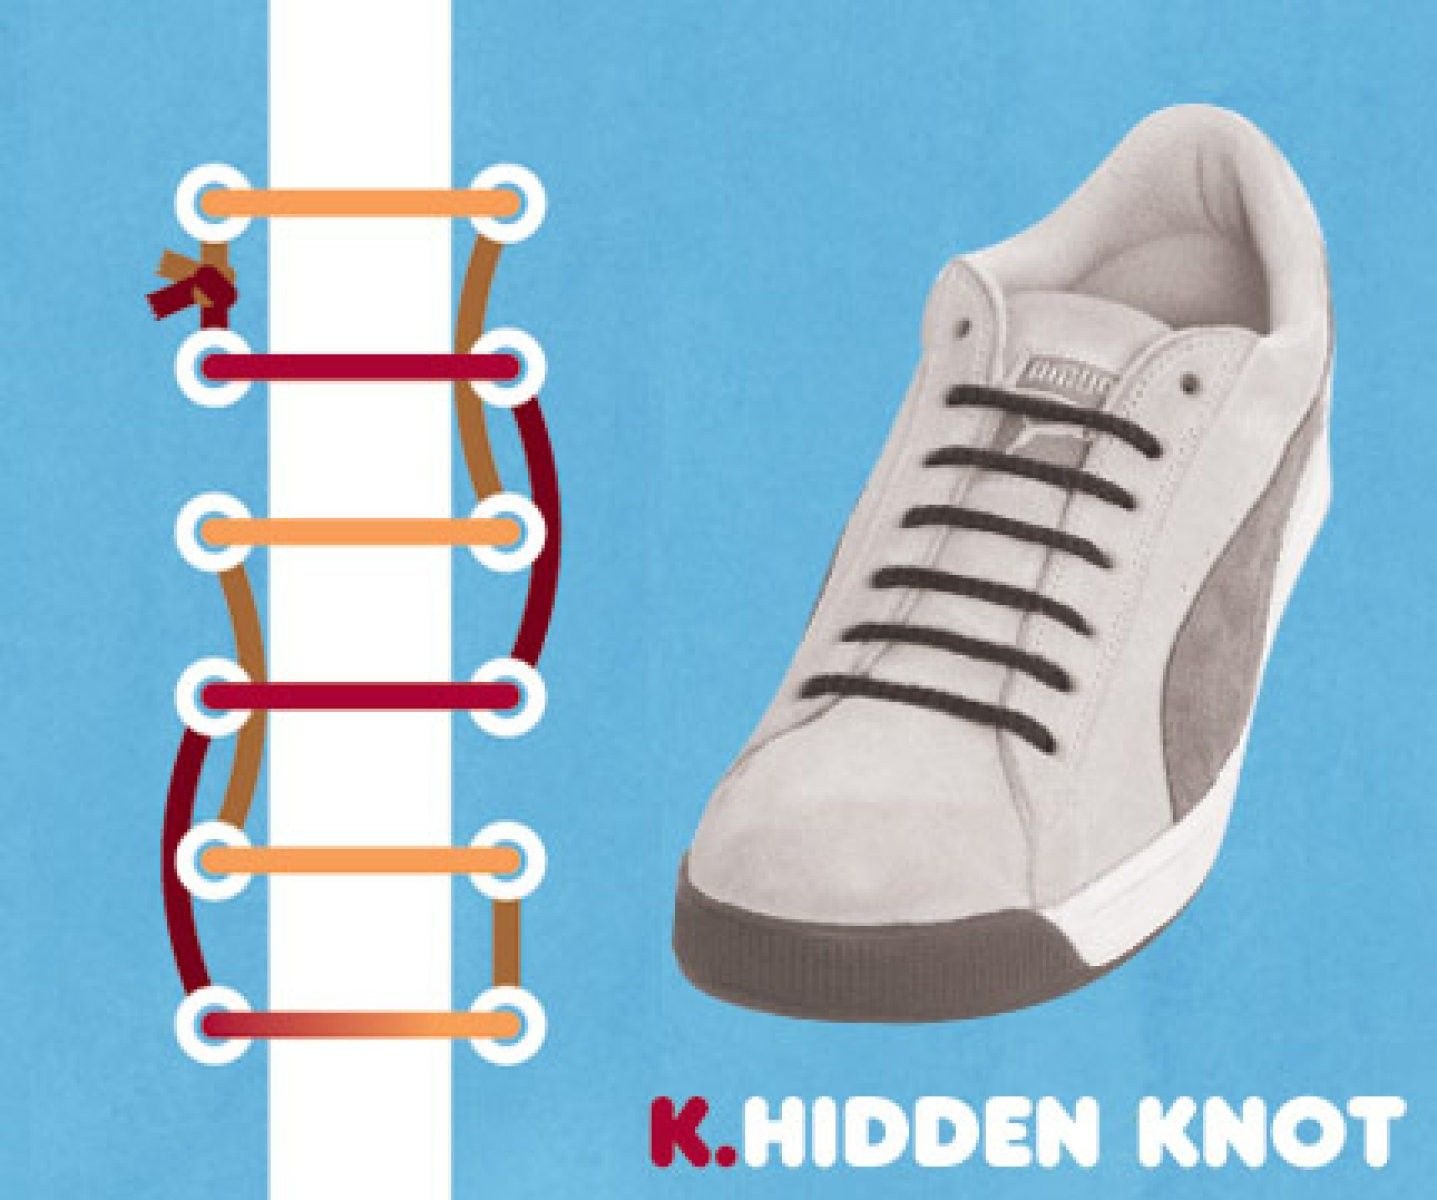 Шнуровка кроссовок с 5 дырками способы шнурования